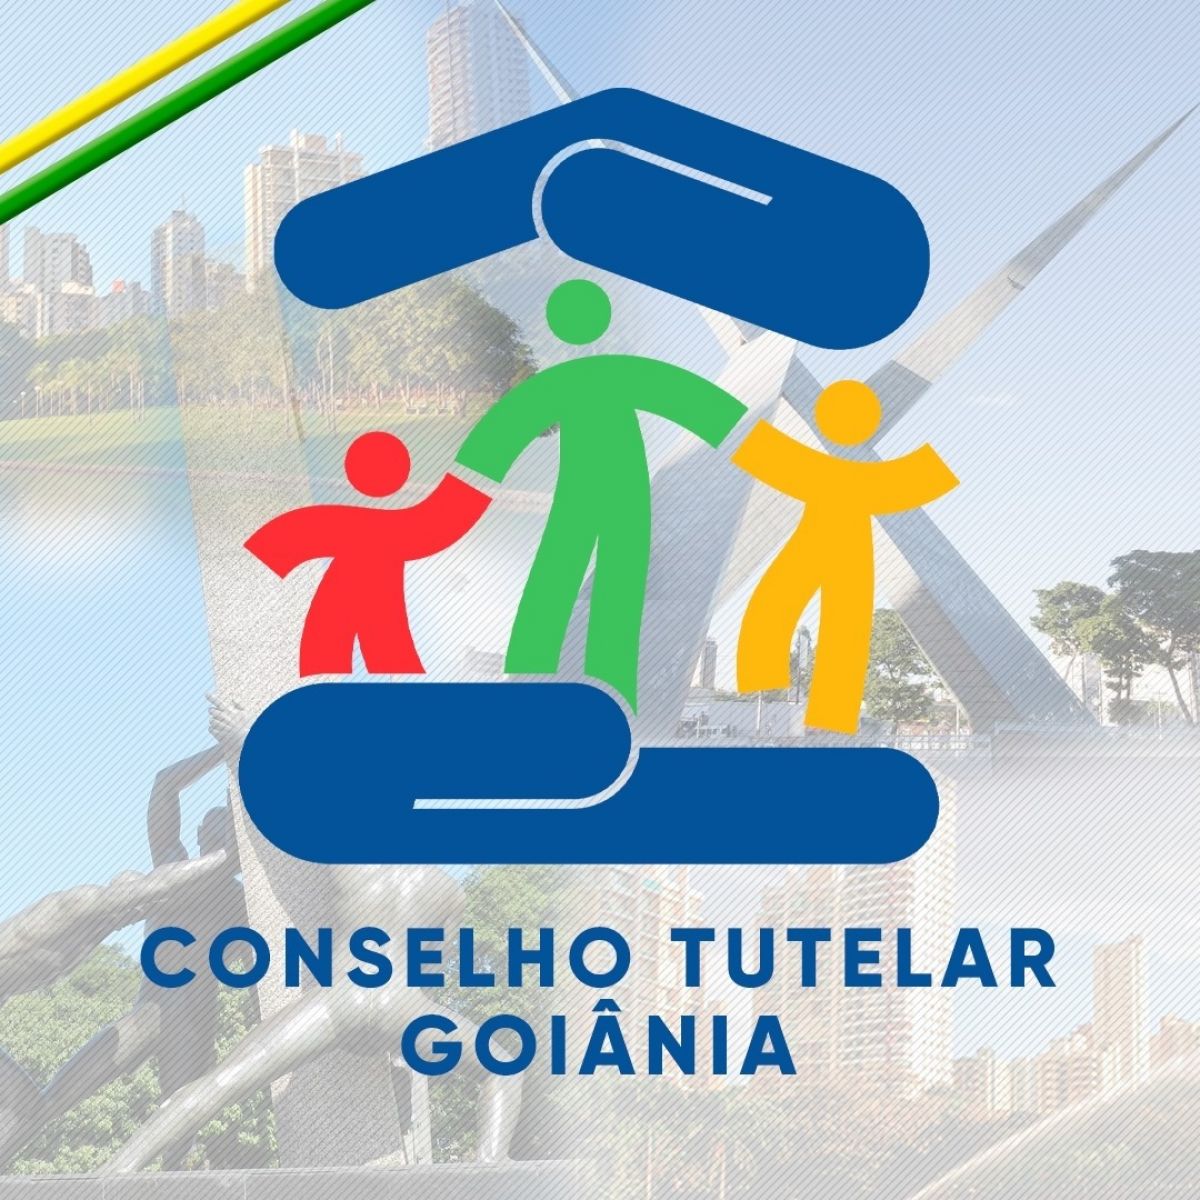 Conselheiros tutelares de Goiânia eleitos em outubro já começaram a trabalhar